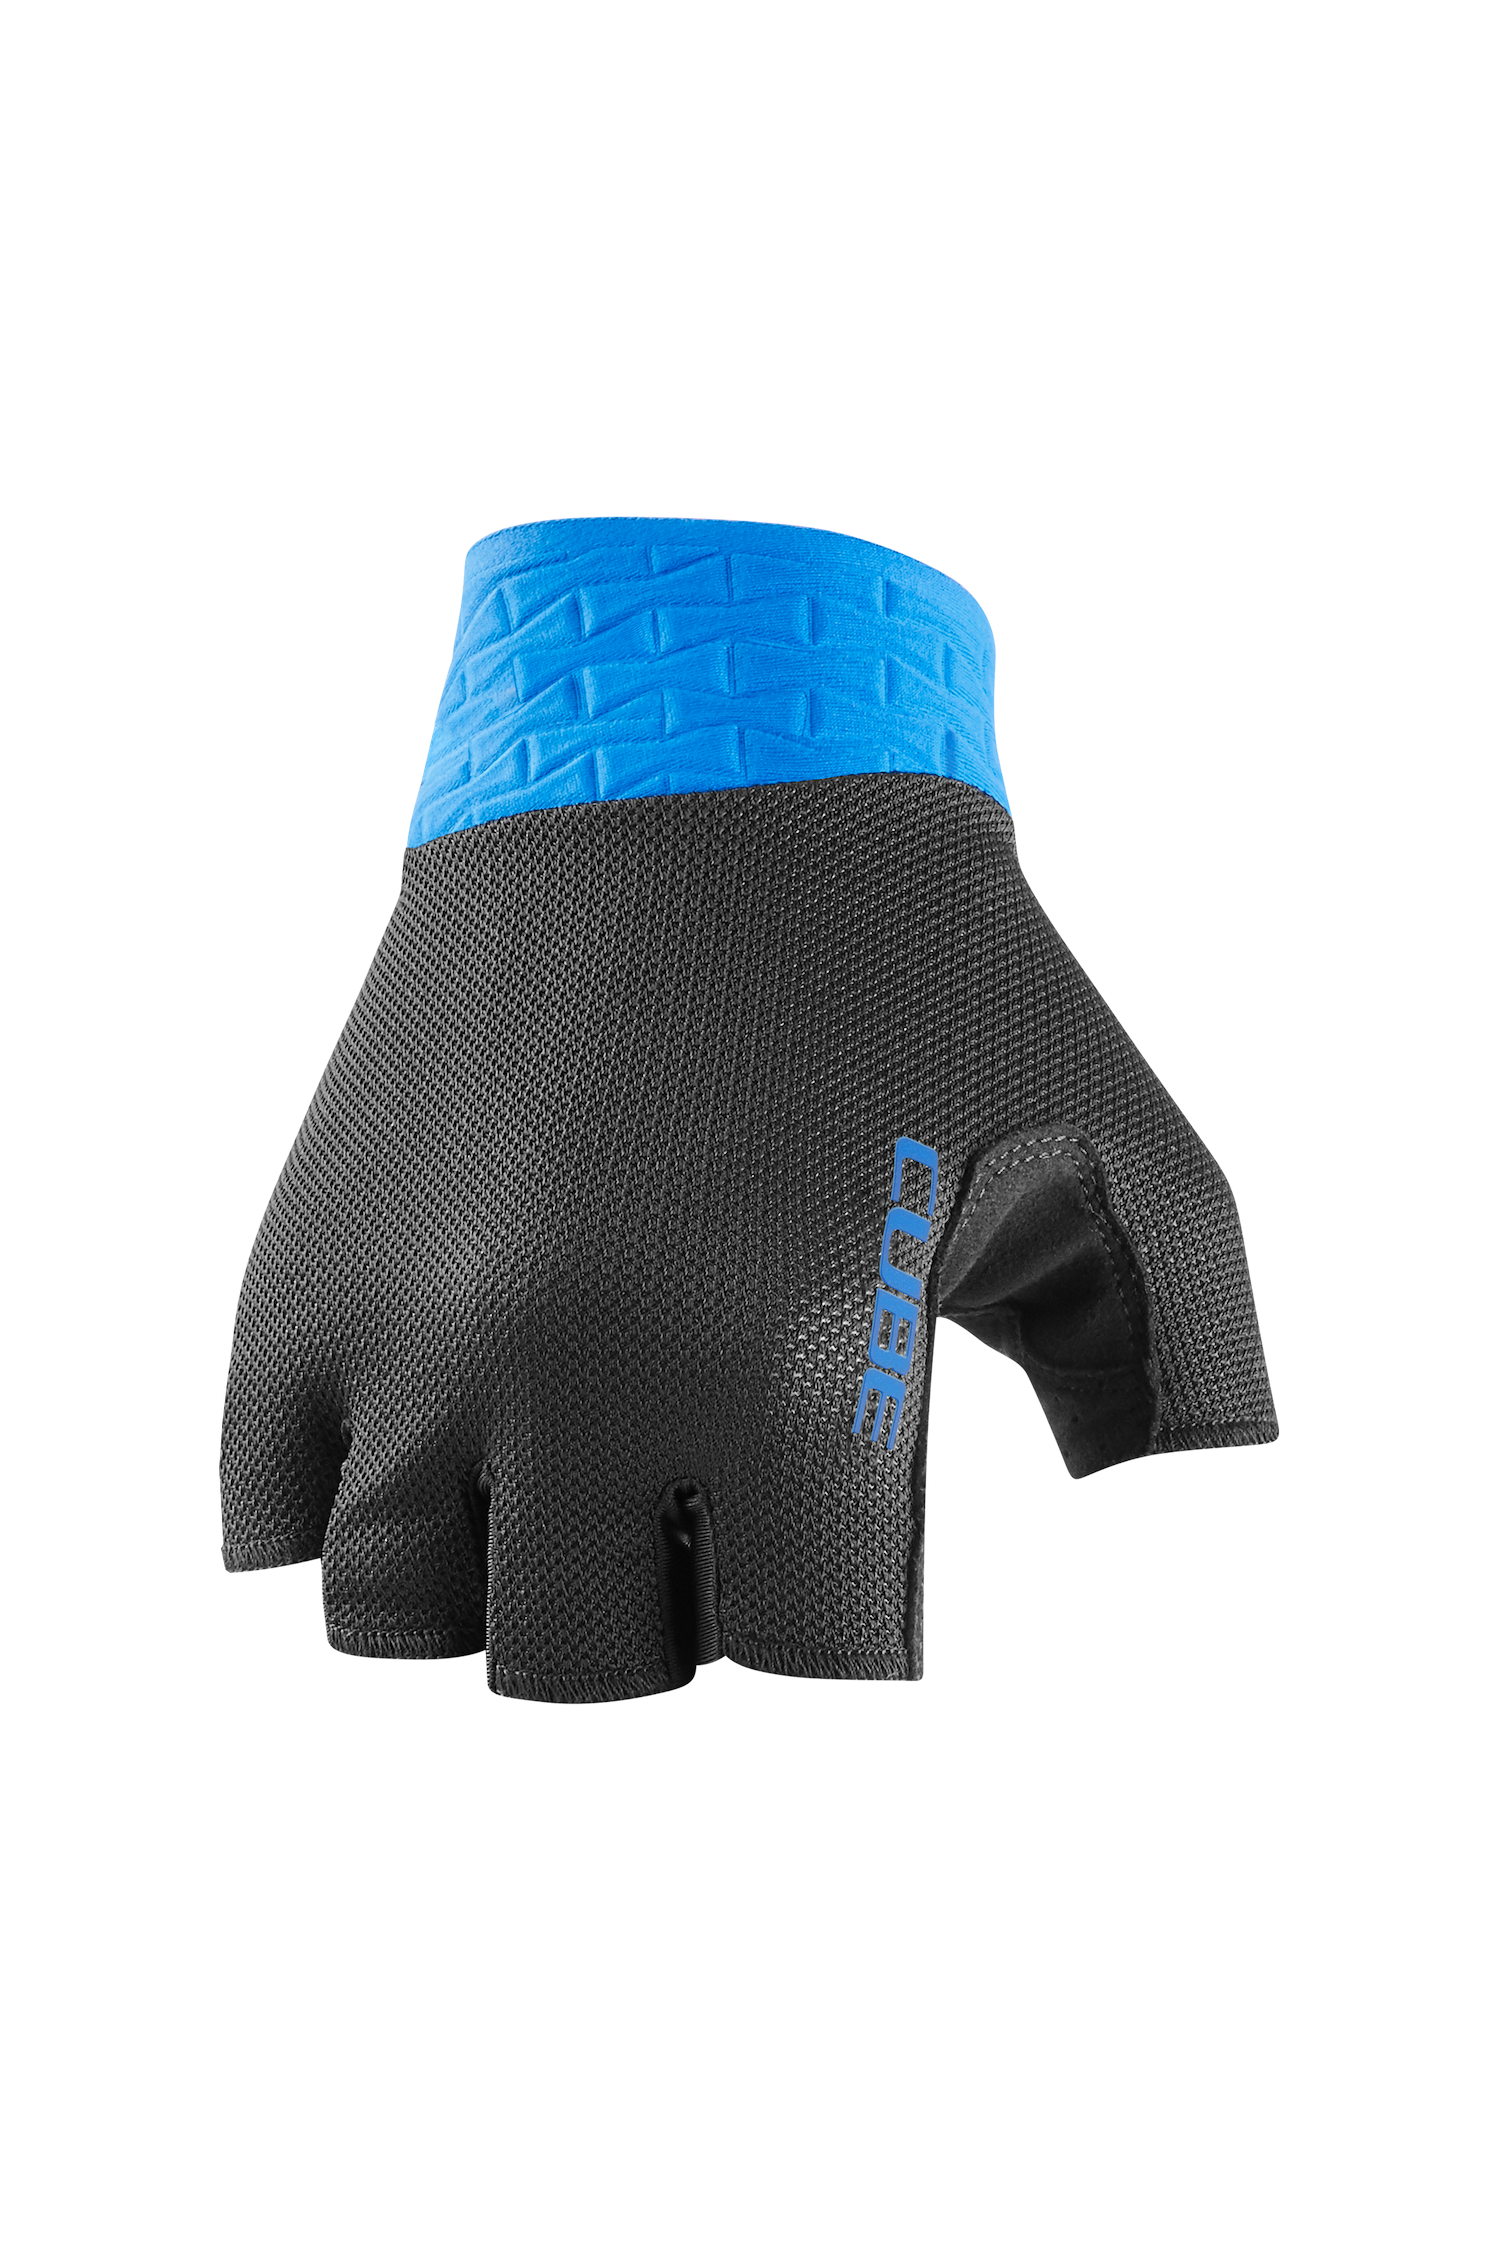 CUBE Handschuhe Performance kurzfinger black´n blue